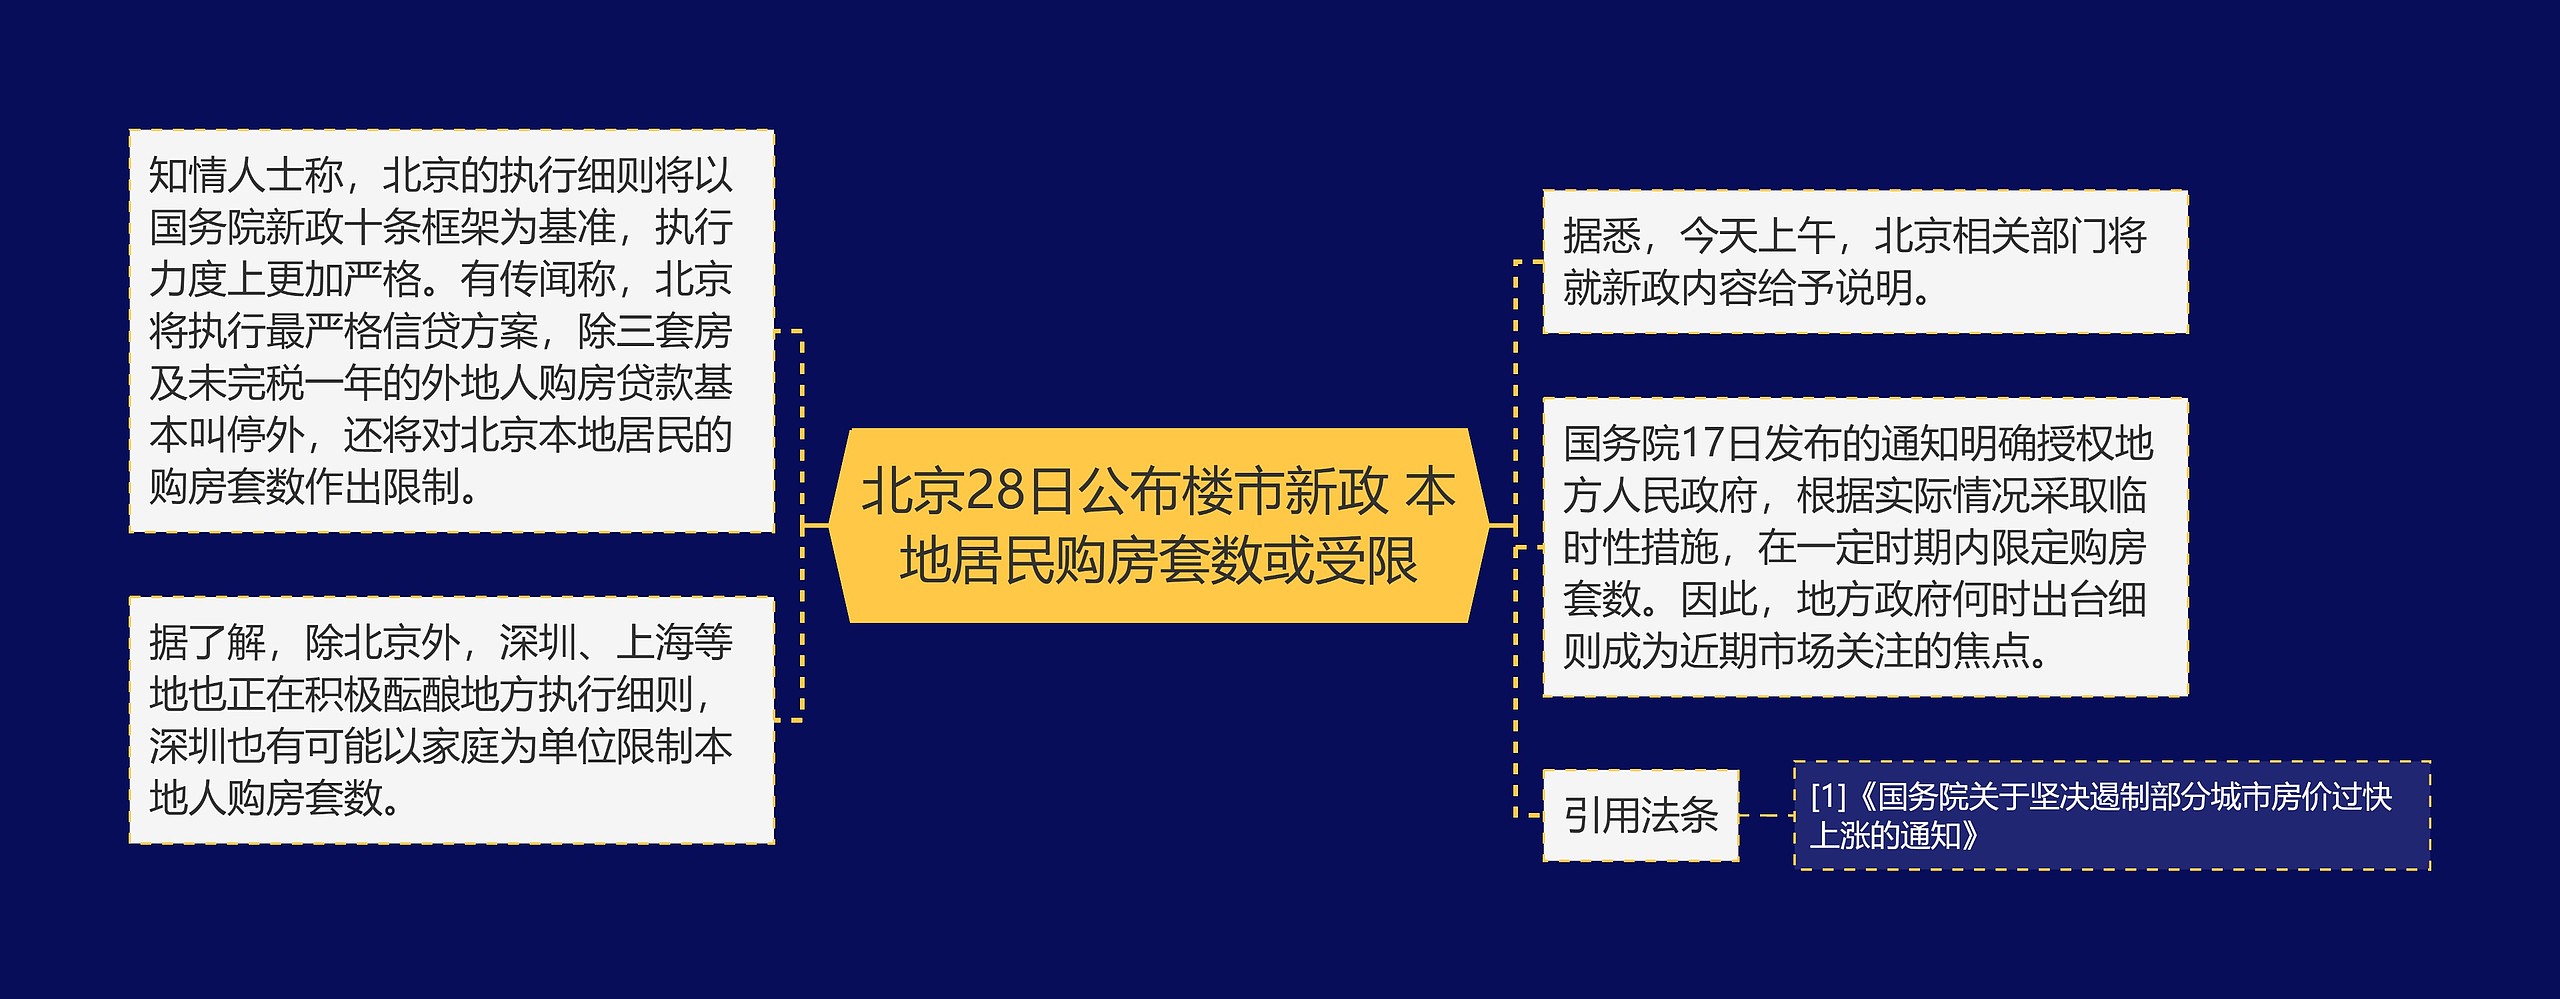 北京28日公布楼市新政 本地居民购房套数或受限思维导图